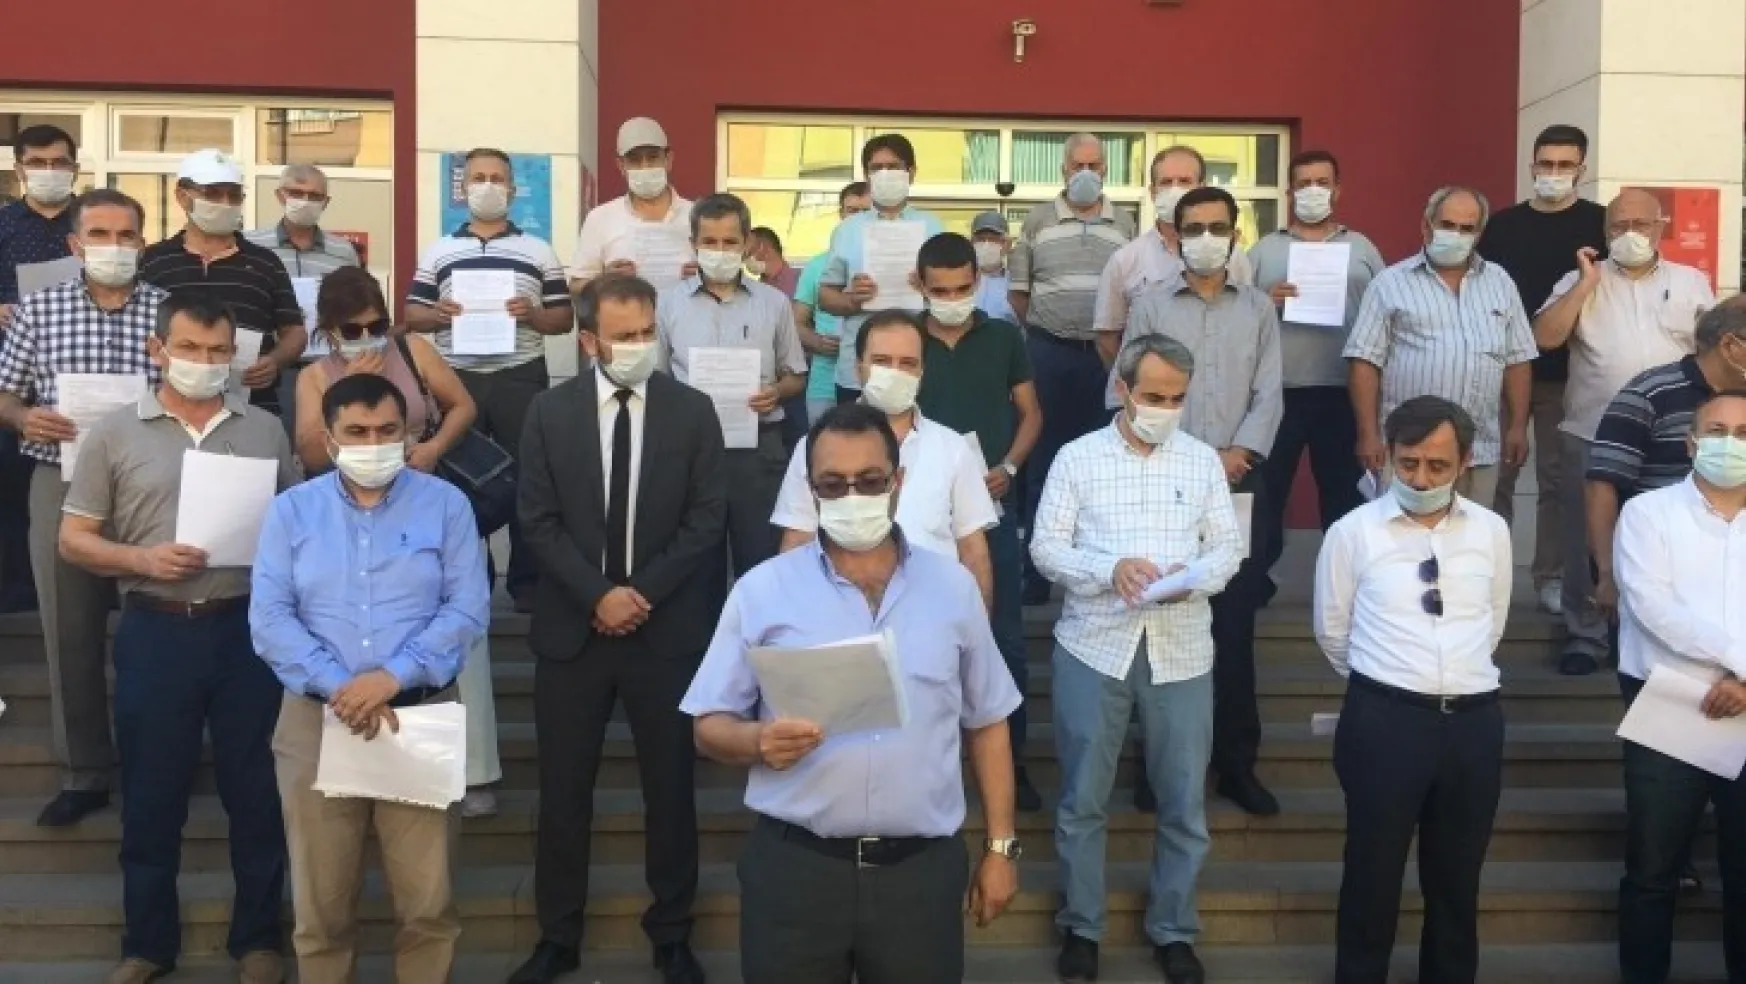 İmam Hatipliler Turgutlu Adliyesi önünde basın açıklaması yapıp şikayet dilekçesi verdiler